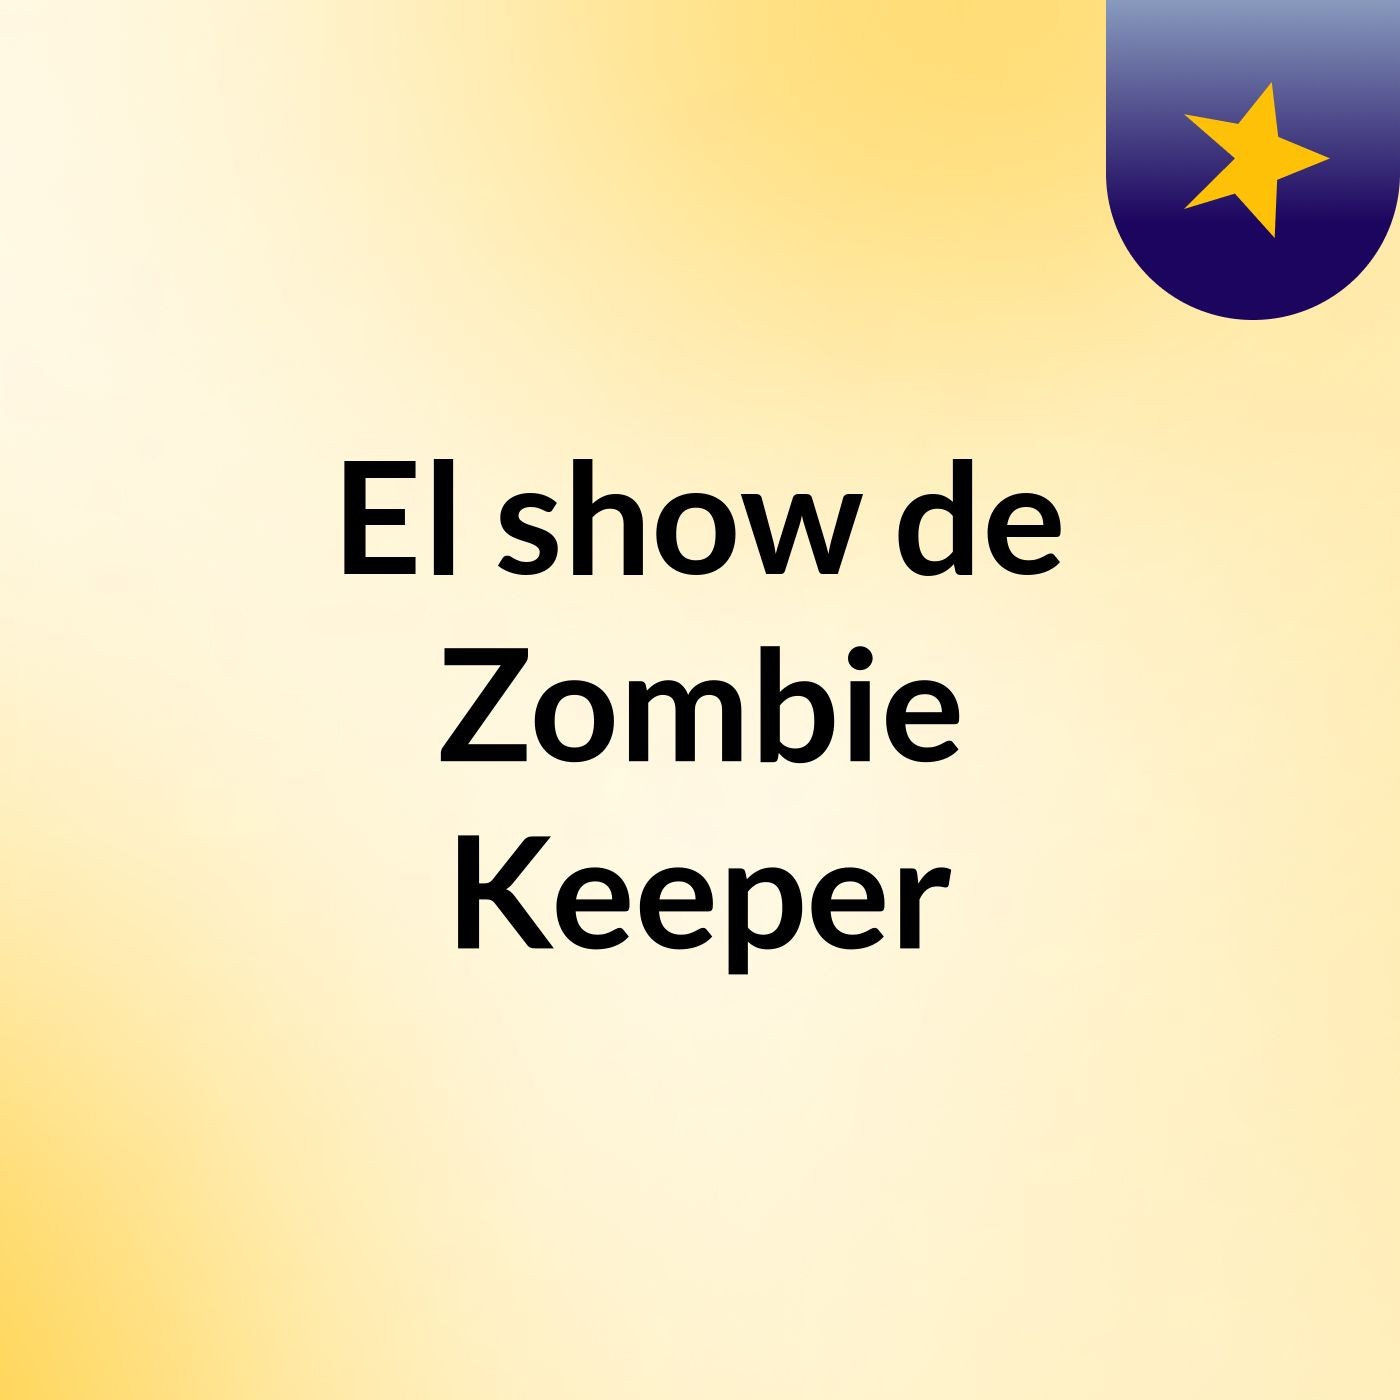 El show de Zombie Keeper